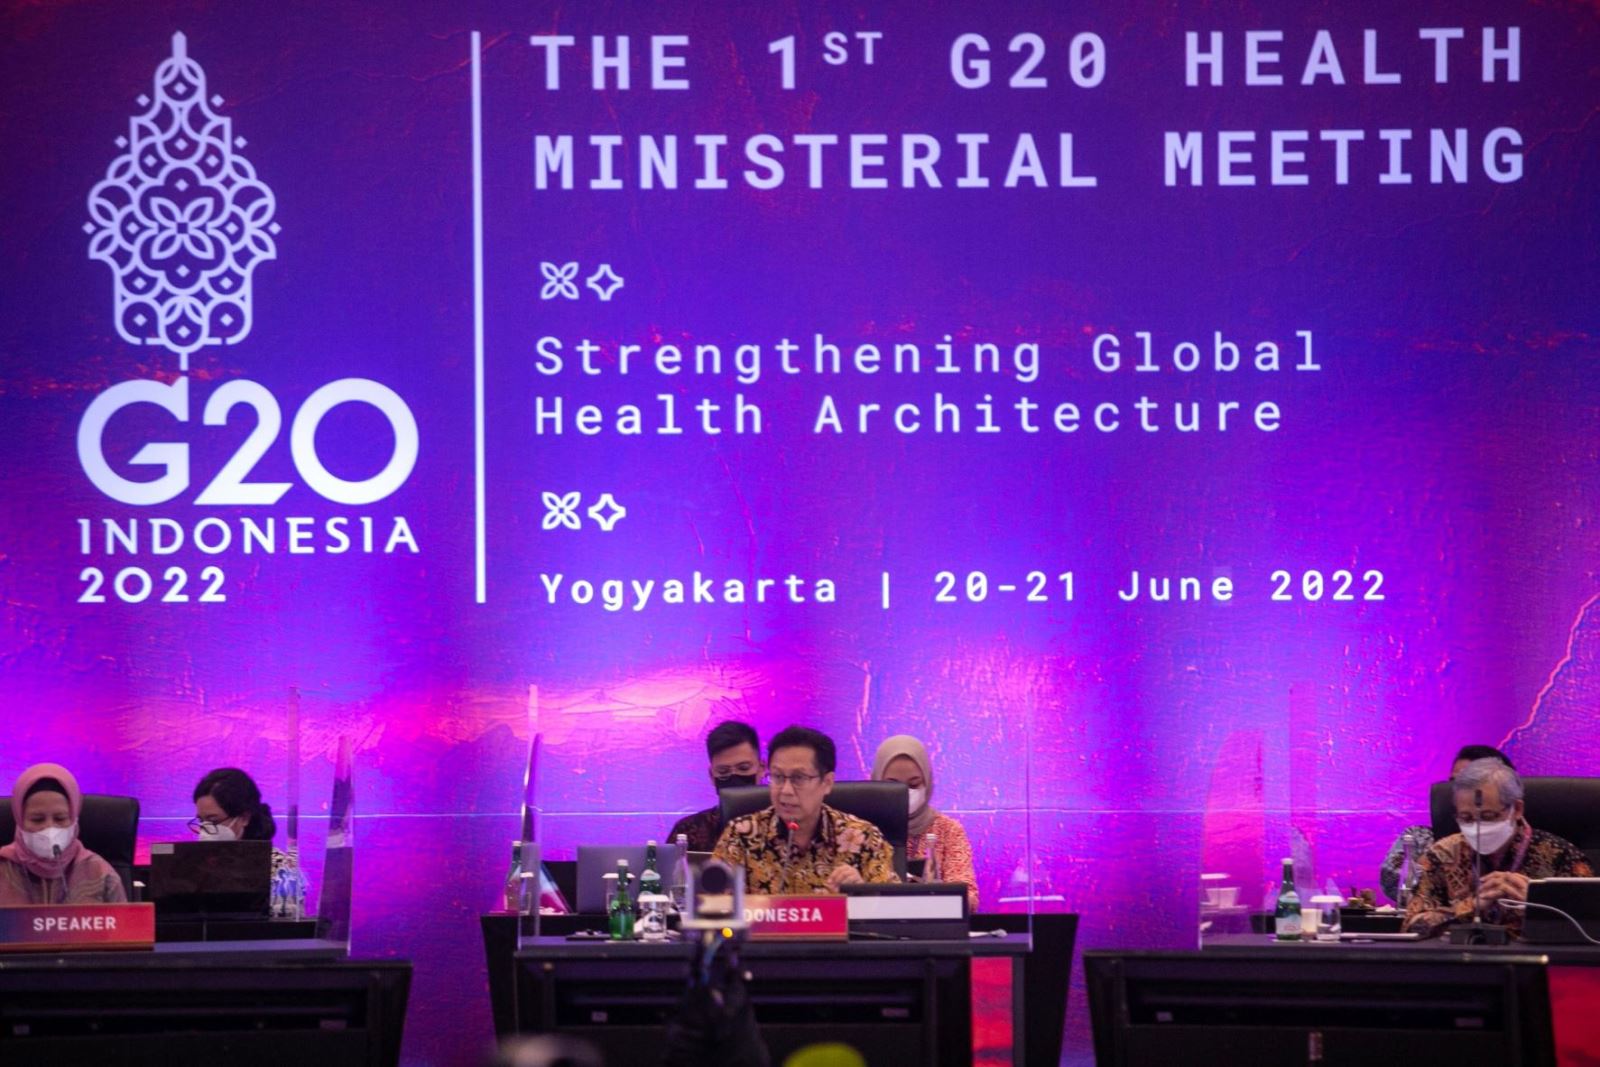 Bộ trưởng Y tế các nước G20 nhóm họp tại Indonesia